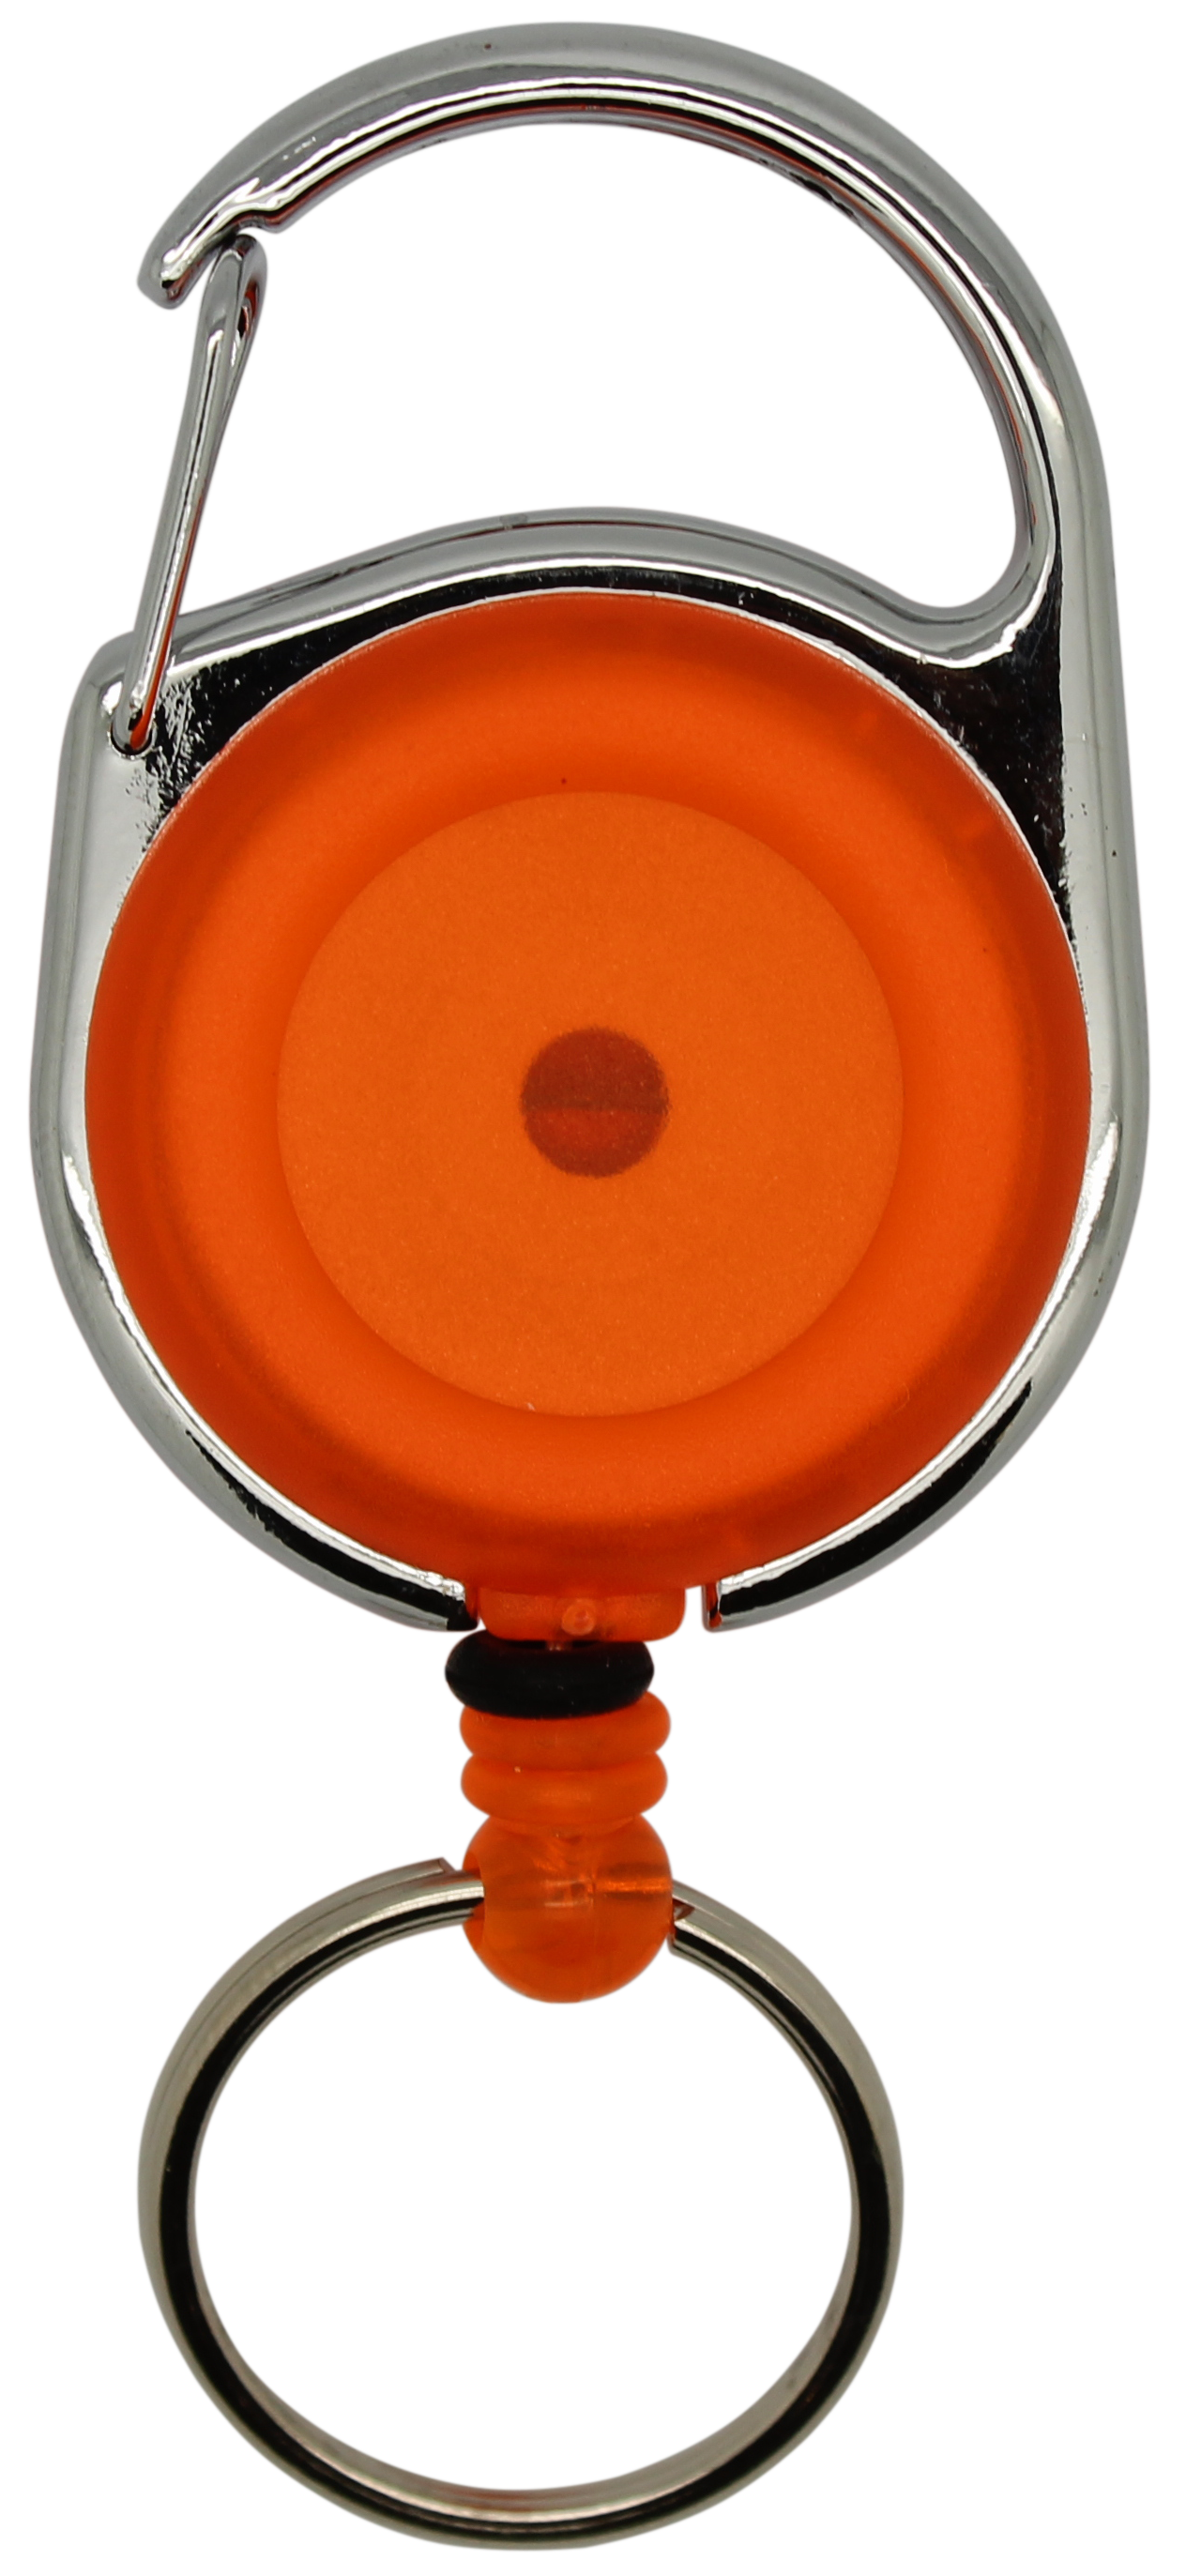 Jojo rund, transparent orange, Karabinerhaken Schlüsselring, Nylonschnur 60 cm 